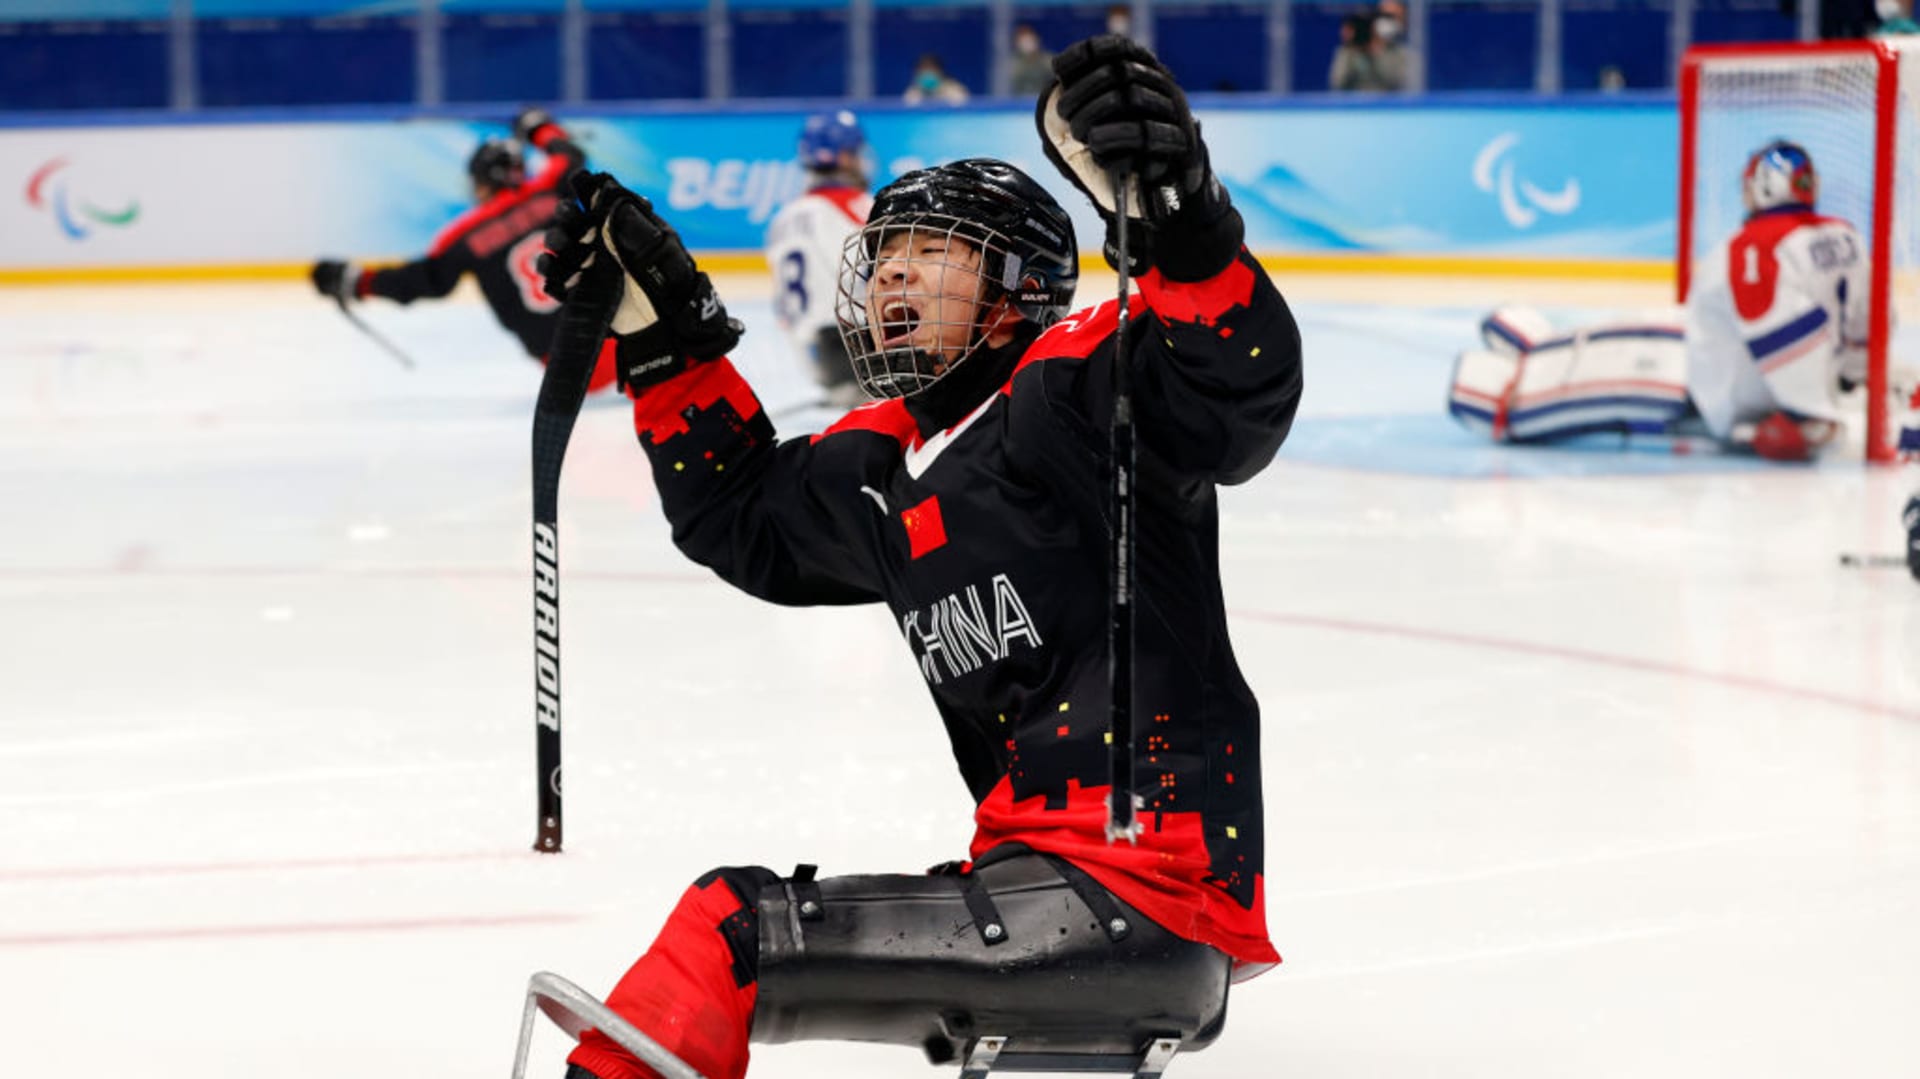 Китайский следж-хоккей продолжает прогрессировать, а сборная США нацелена  на четвертое золото подряд